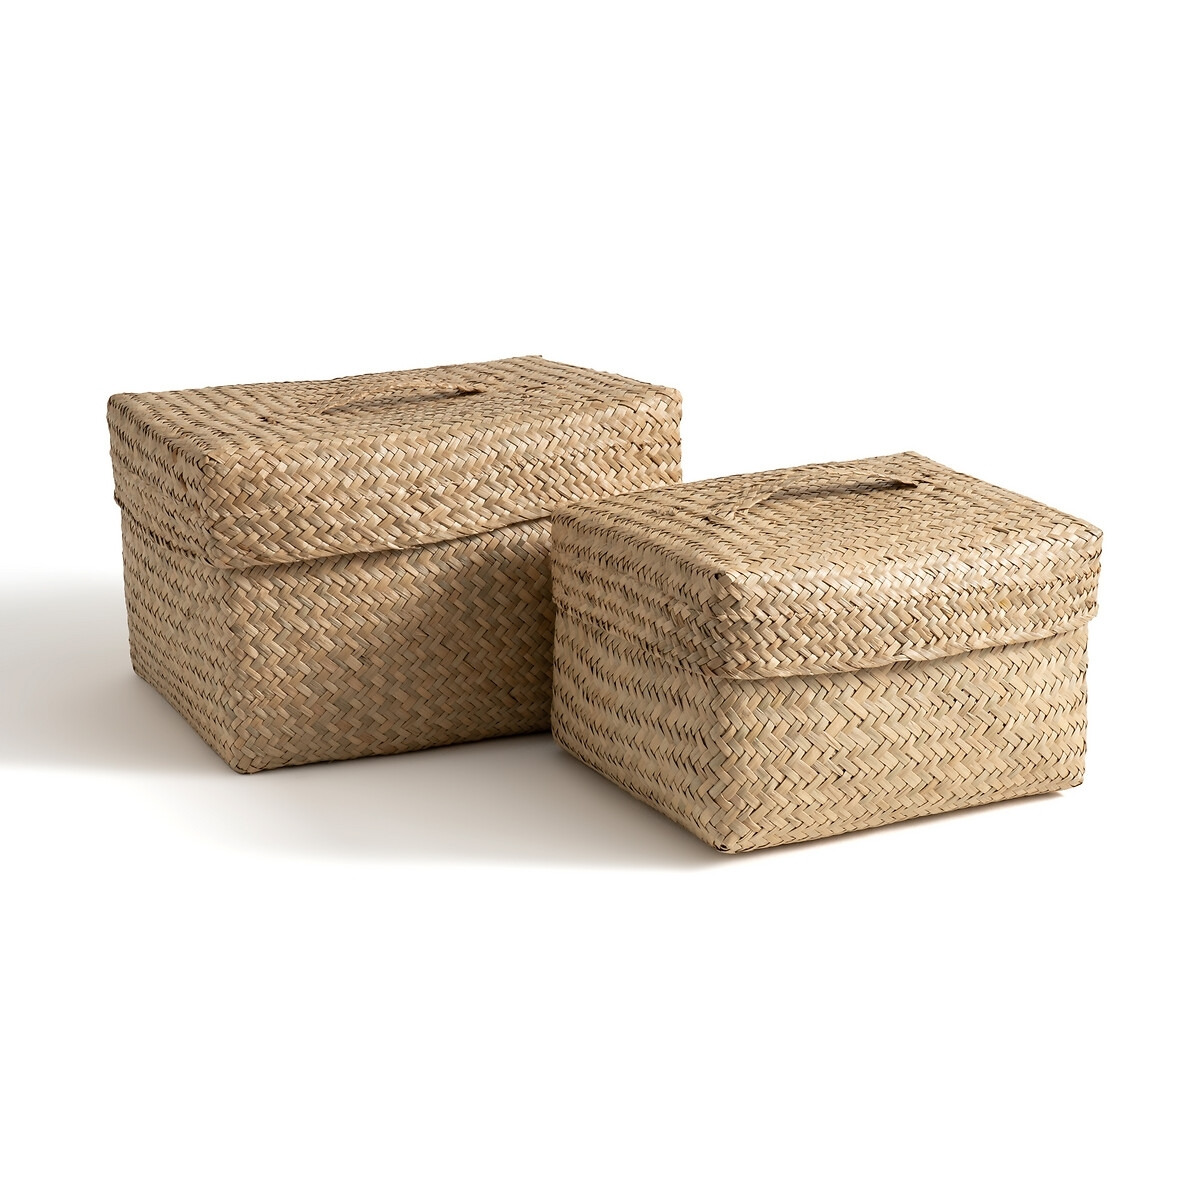 Set of 2 Kotak Baskets with Lids - image 1